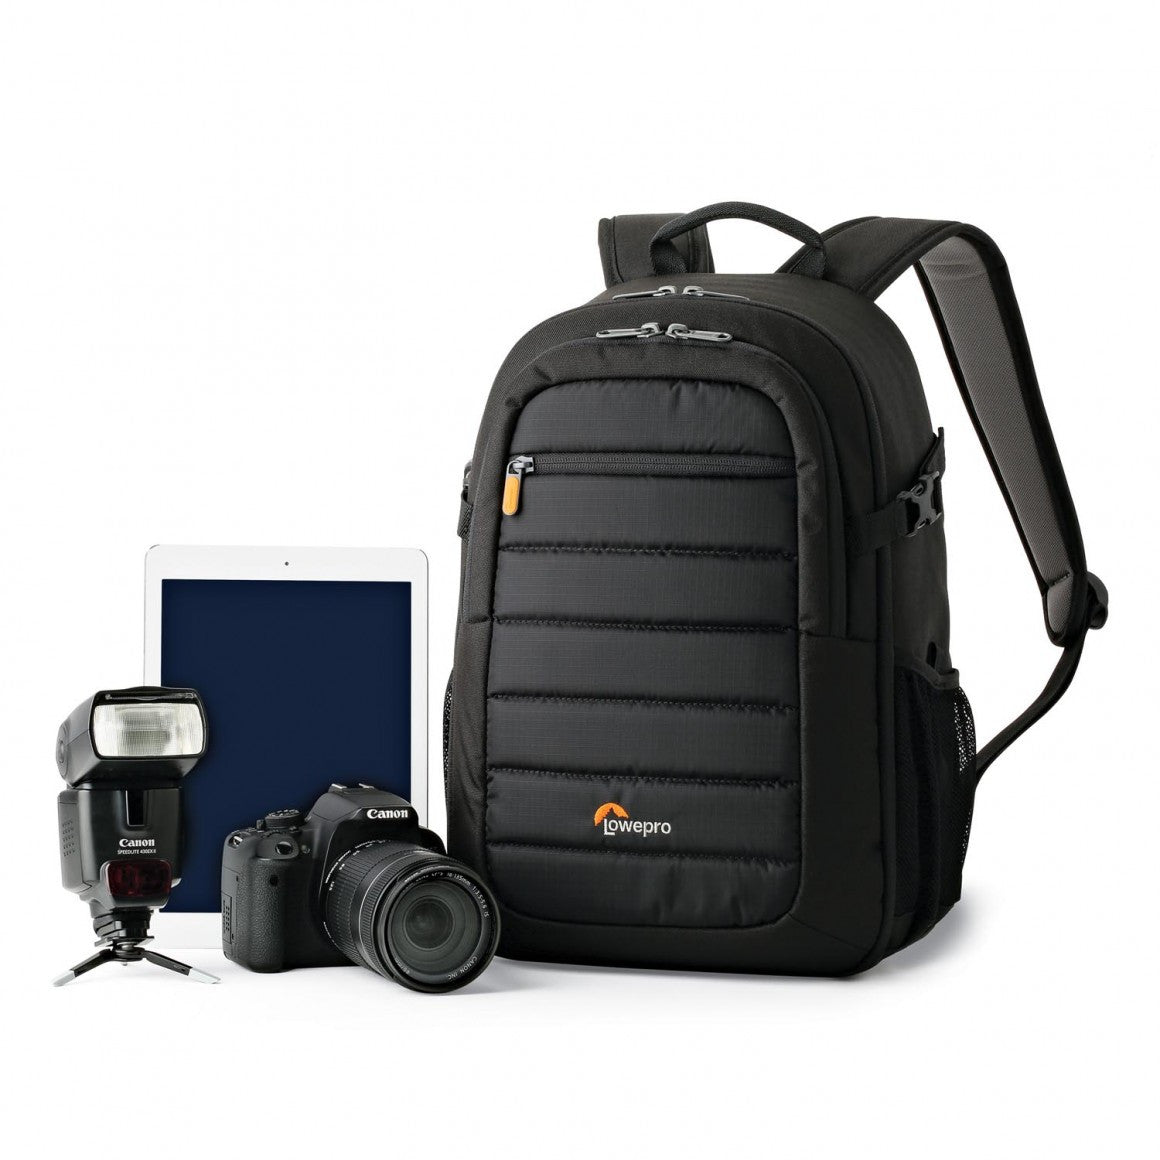 Lowepro Tahoe BP150 Backpack (Black), bags backpacks, Lowepro - Pictureline  - 4